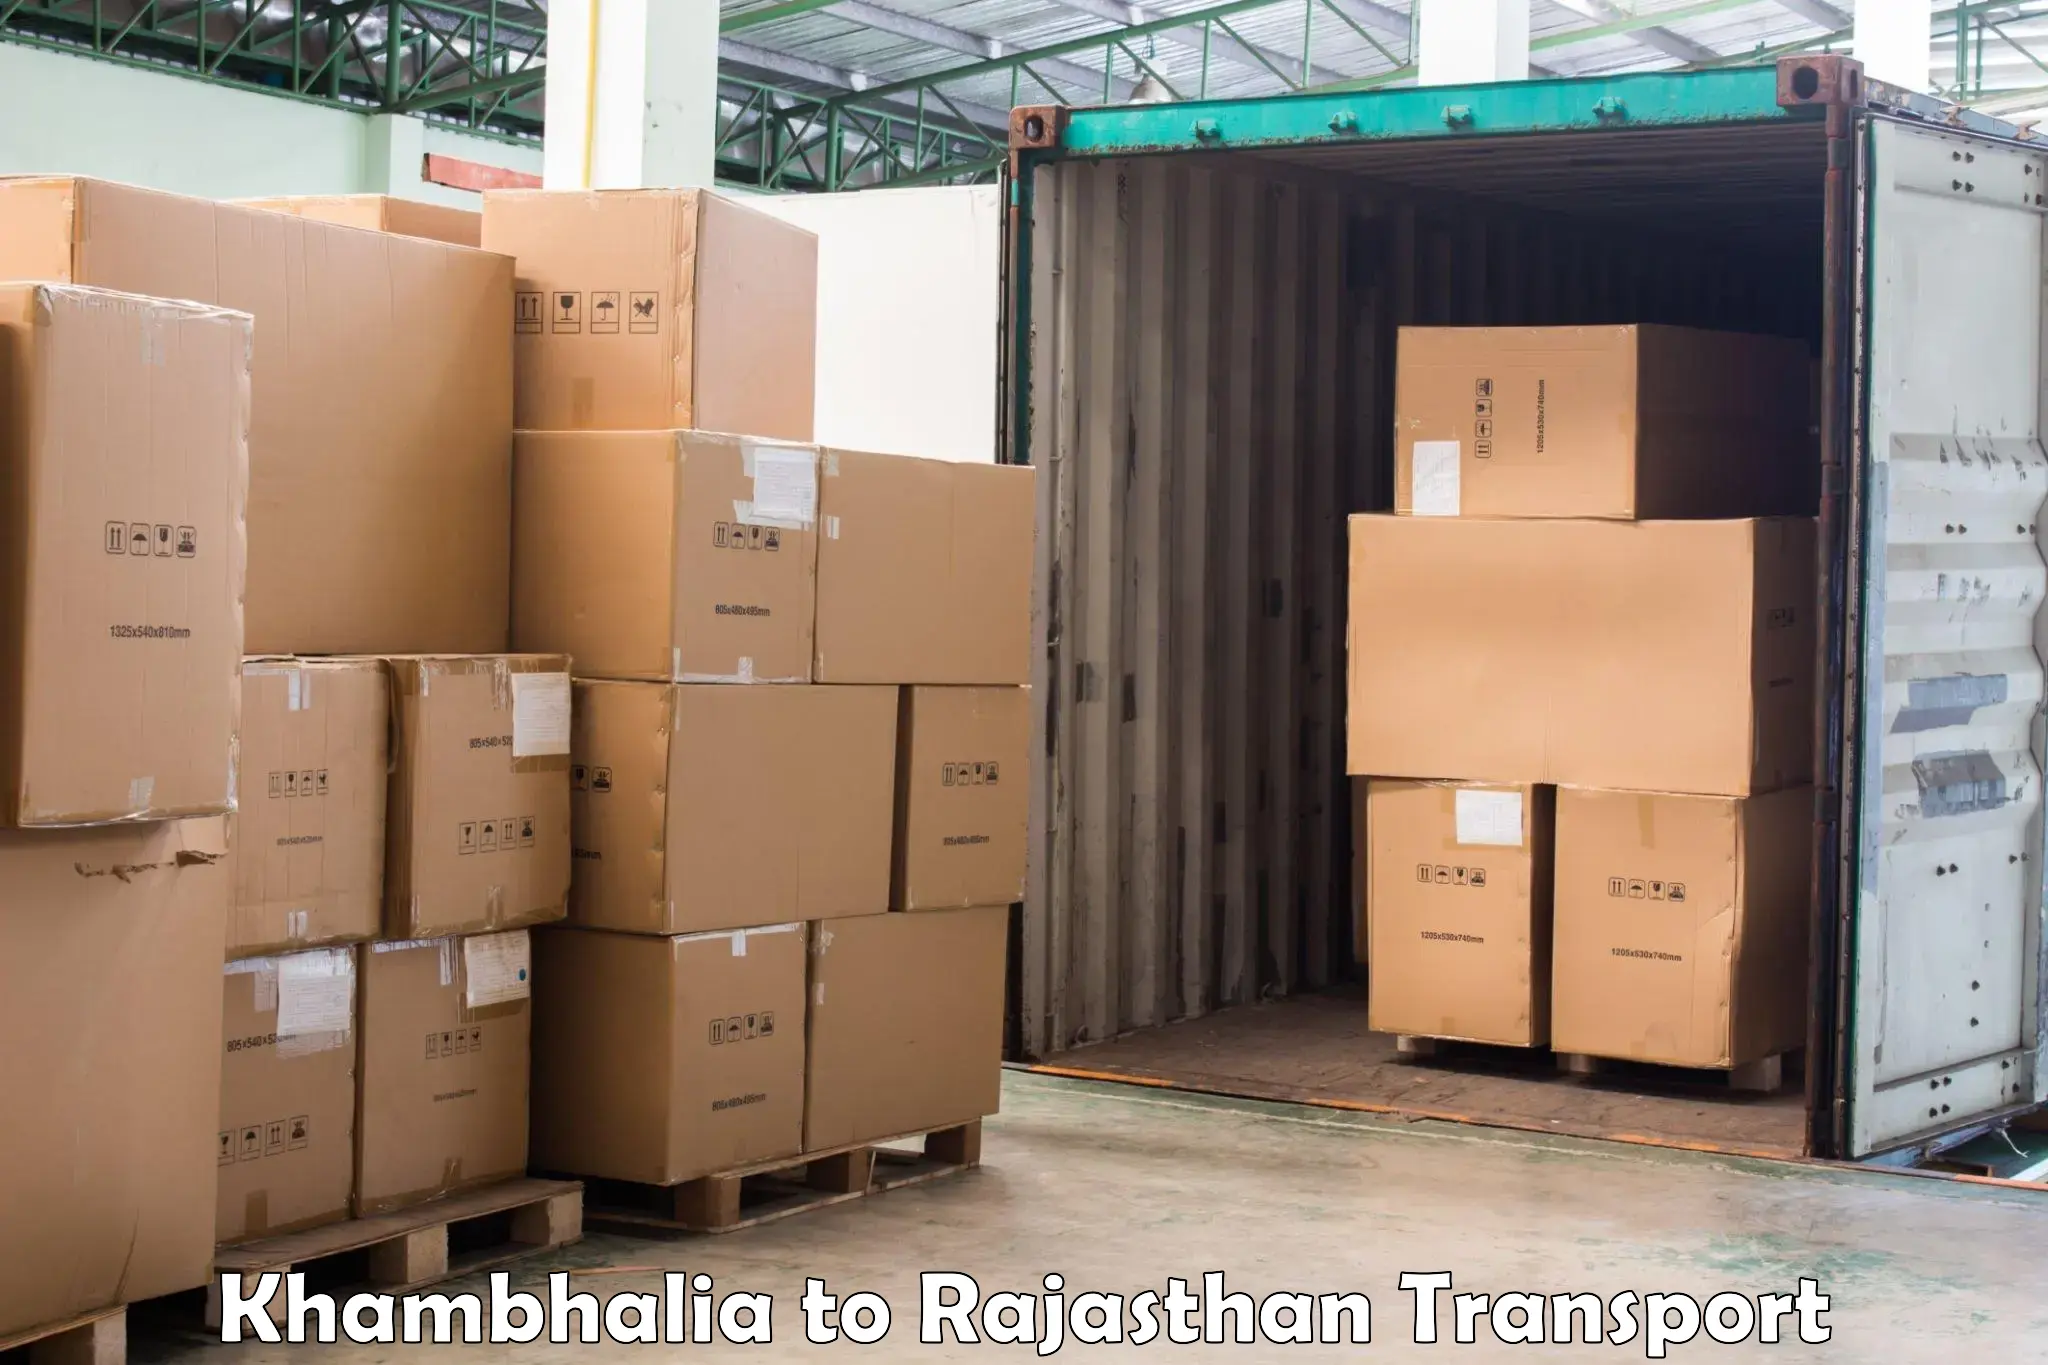 Air freight transport services Khambhalia to Bhiwadi